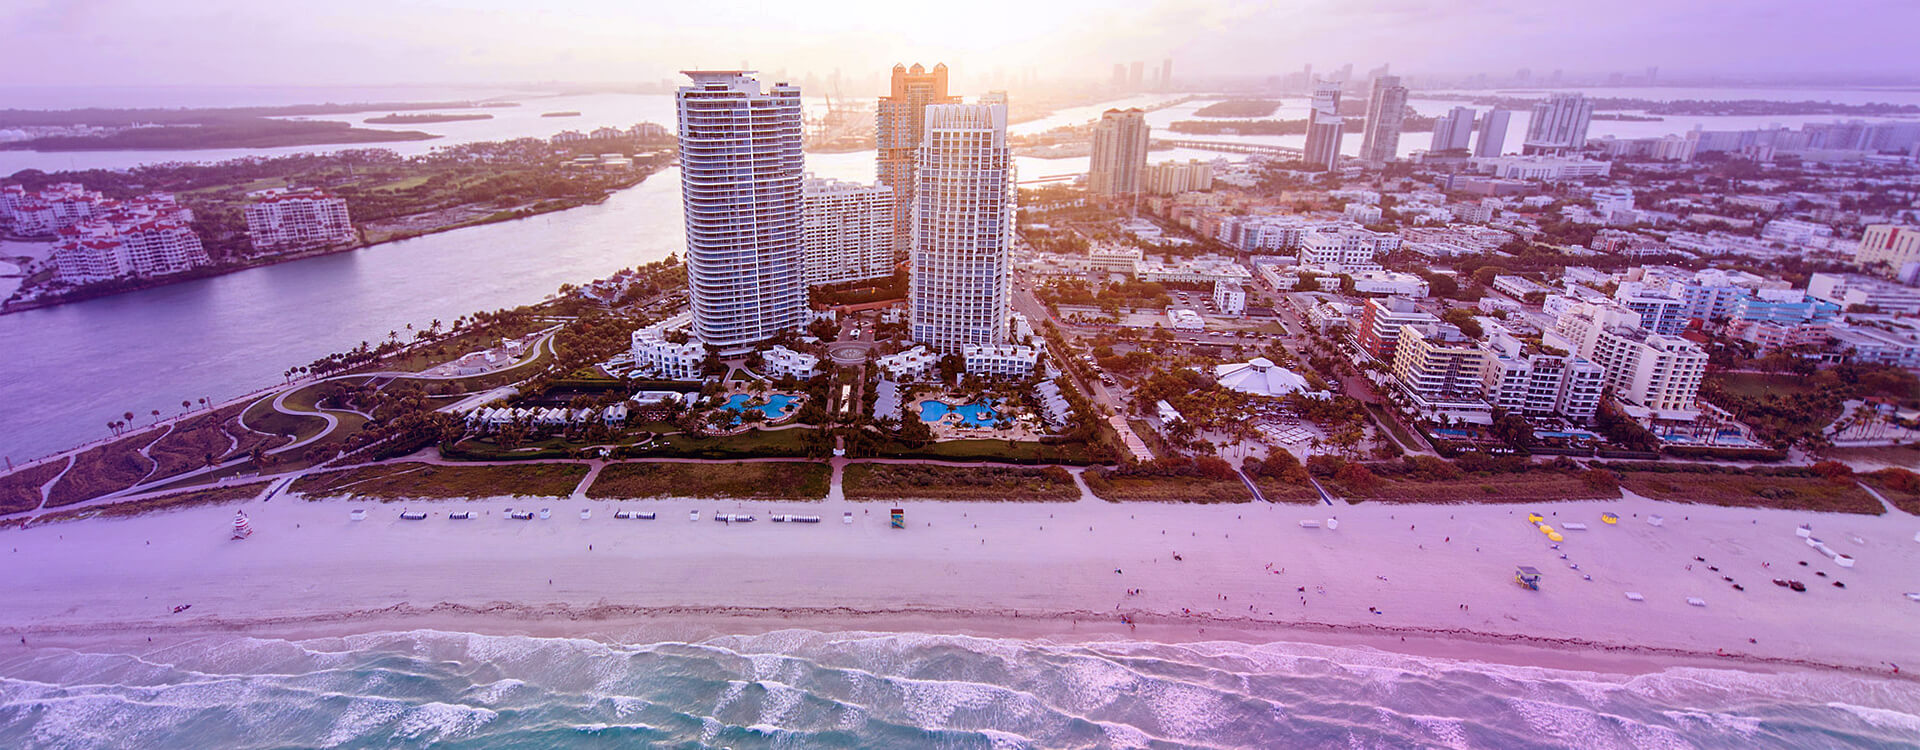 Vista aérea de Miami. Praia e prédios ao fundo.